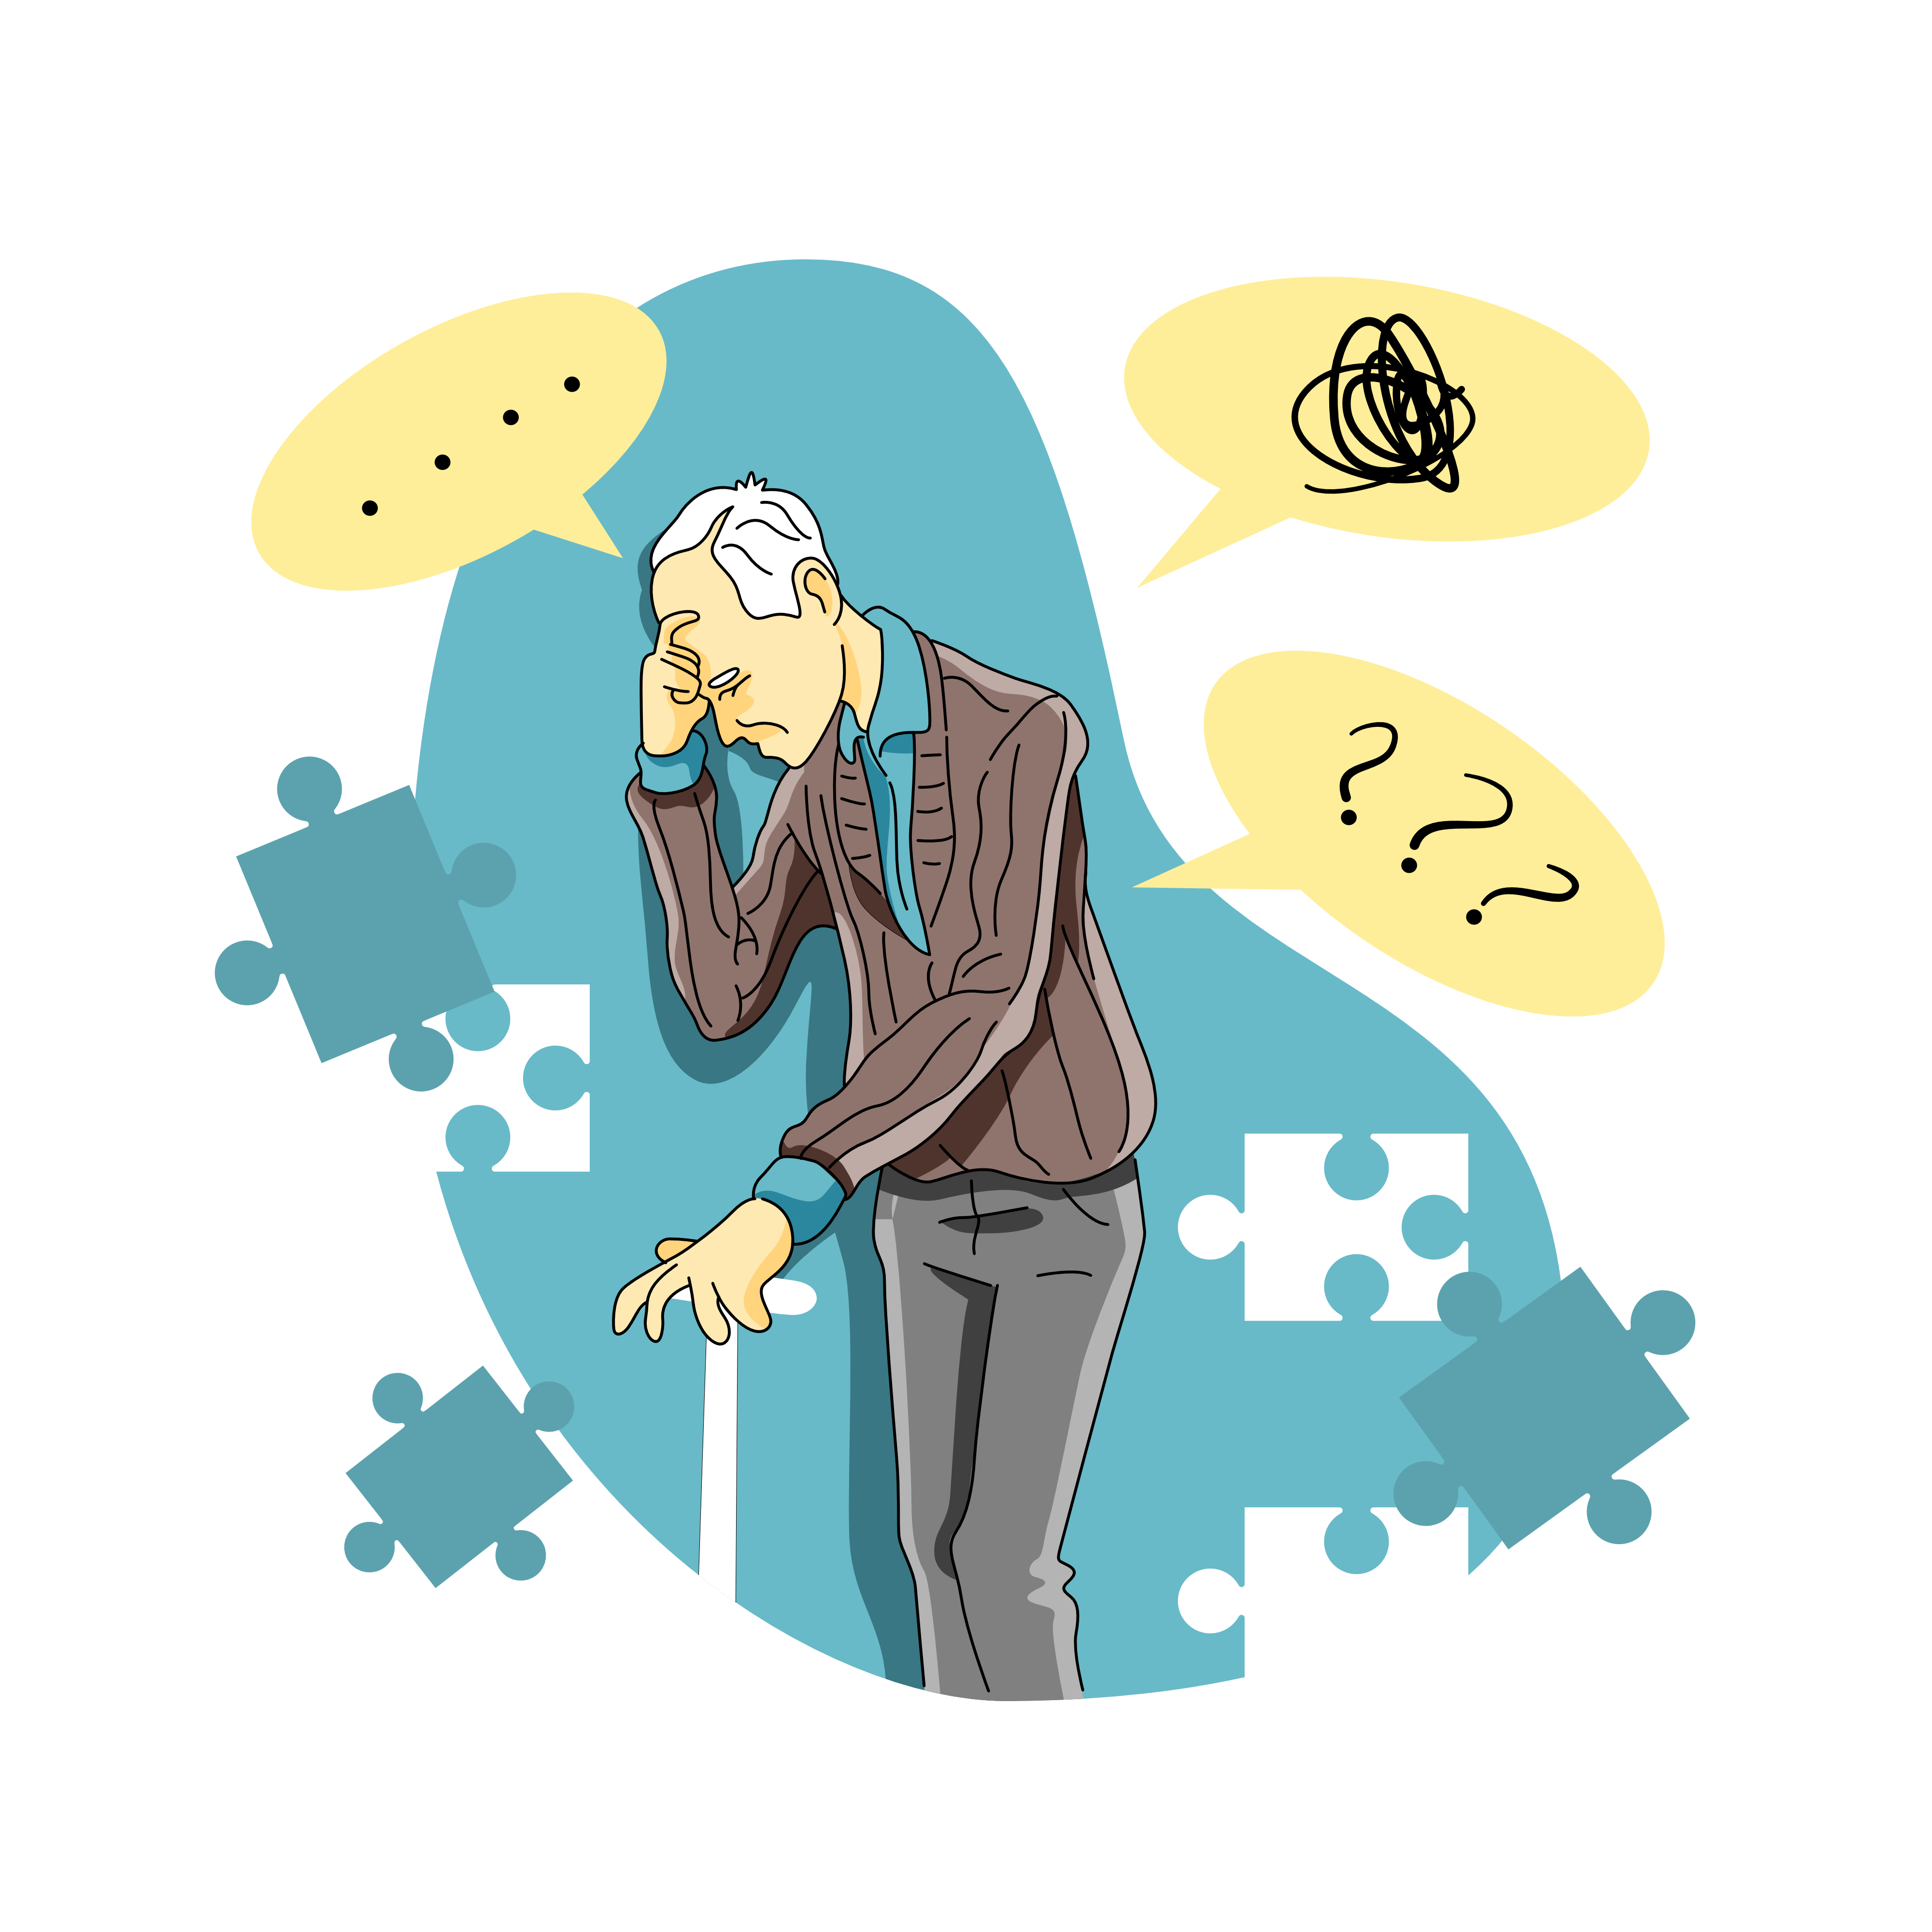 Yön Duygusunu Kaybetmiş ve Evden Çıkmak İsteyen Alzheimer Hastaları İçin Neler Yapılabilir?